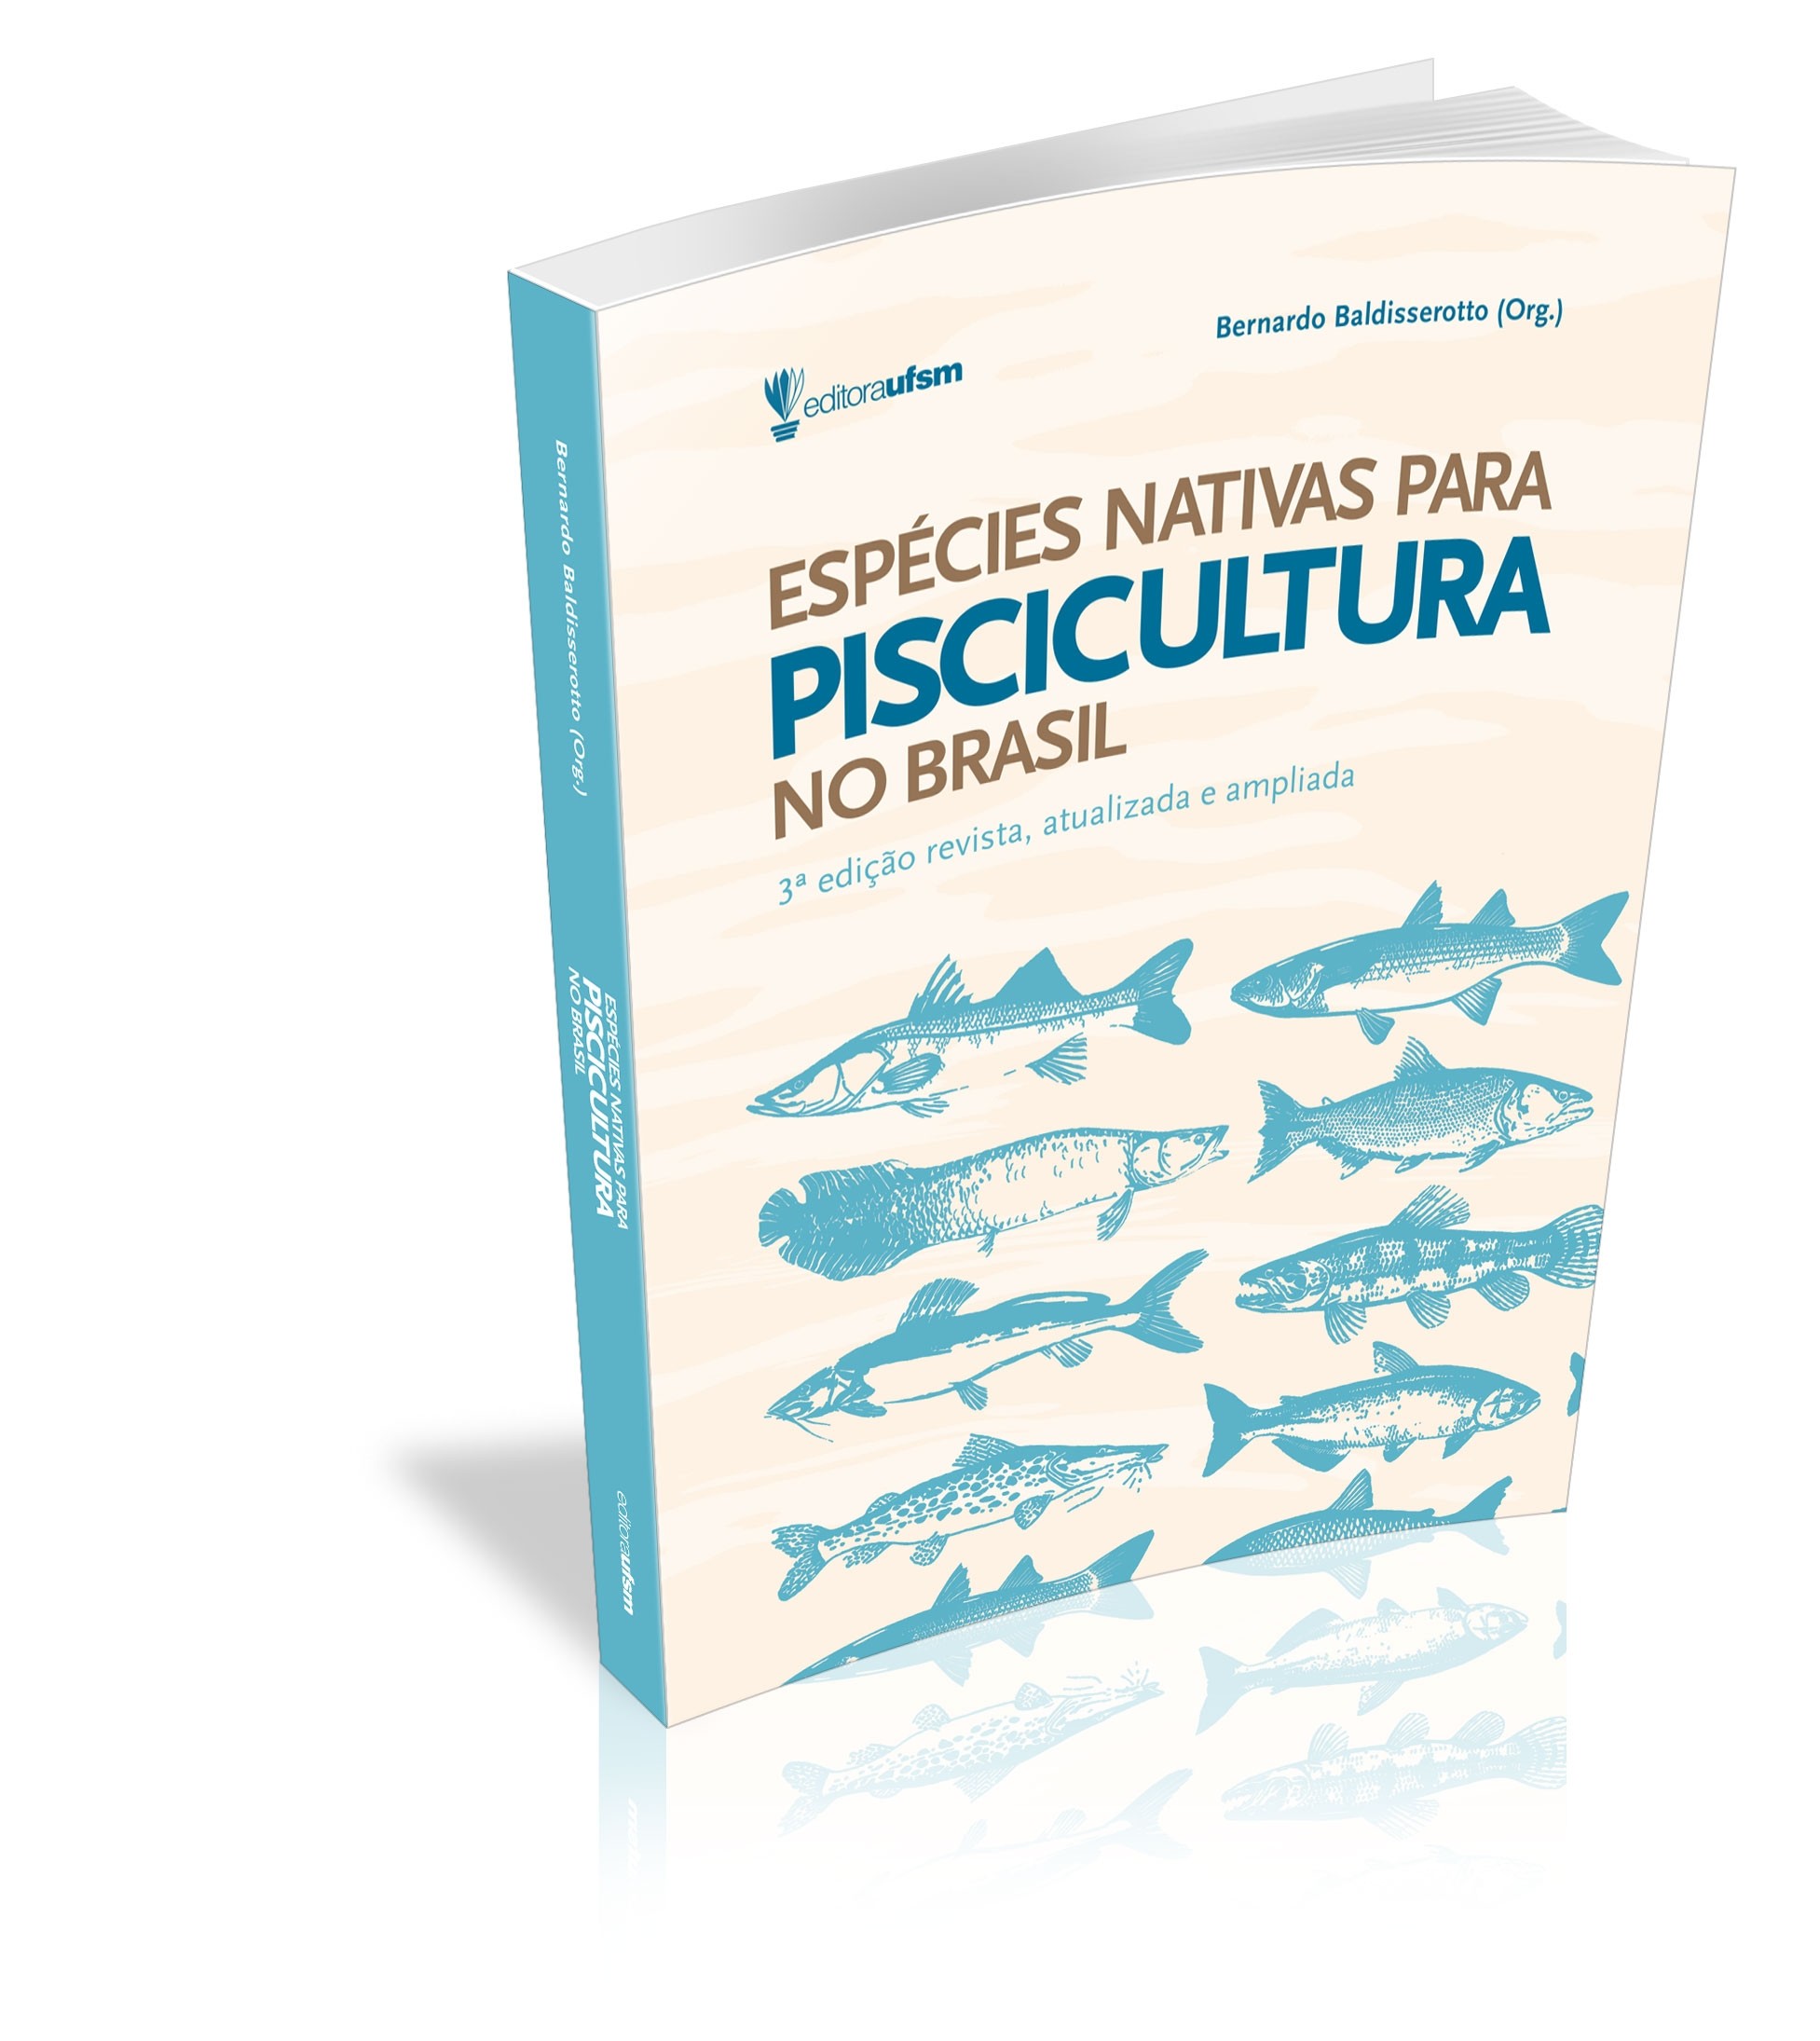 Capa do livro Espécies nativas para piscicultura no Brasil - 3ª edição revista, atualizada e ampliada